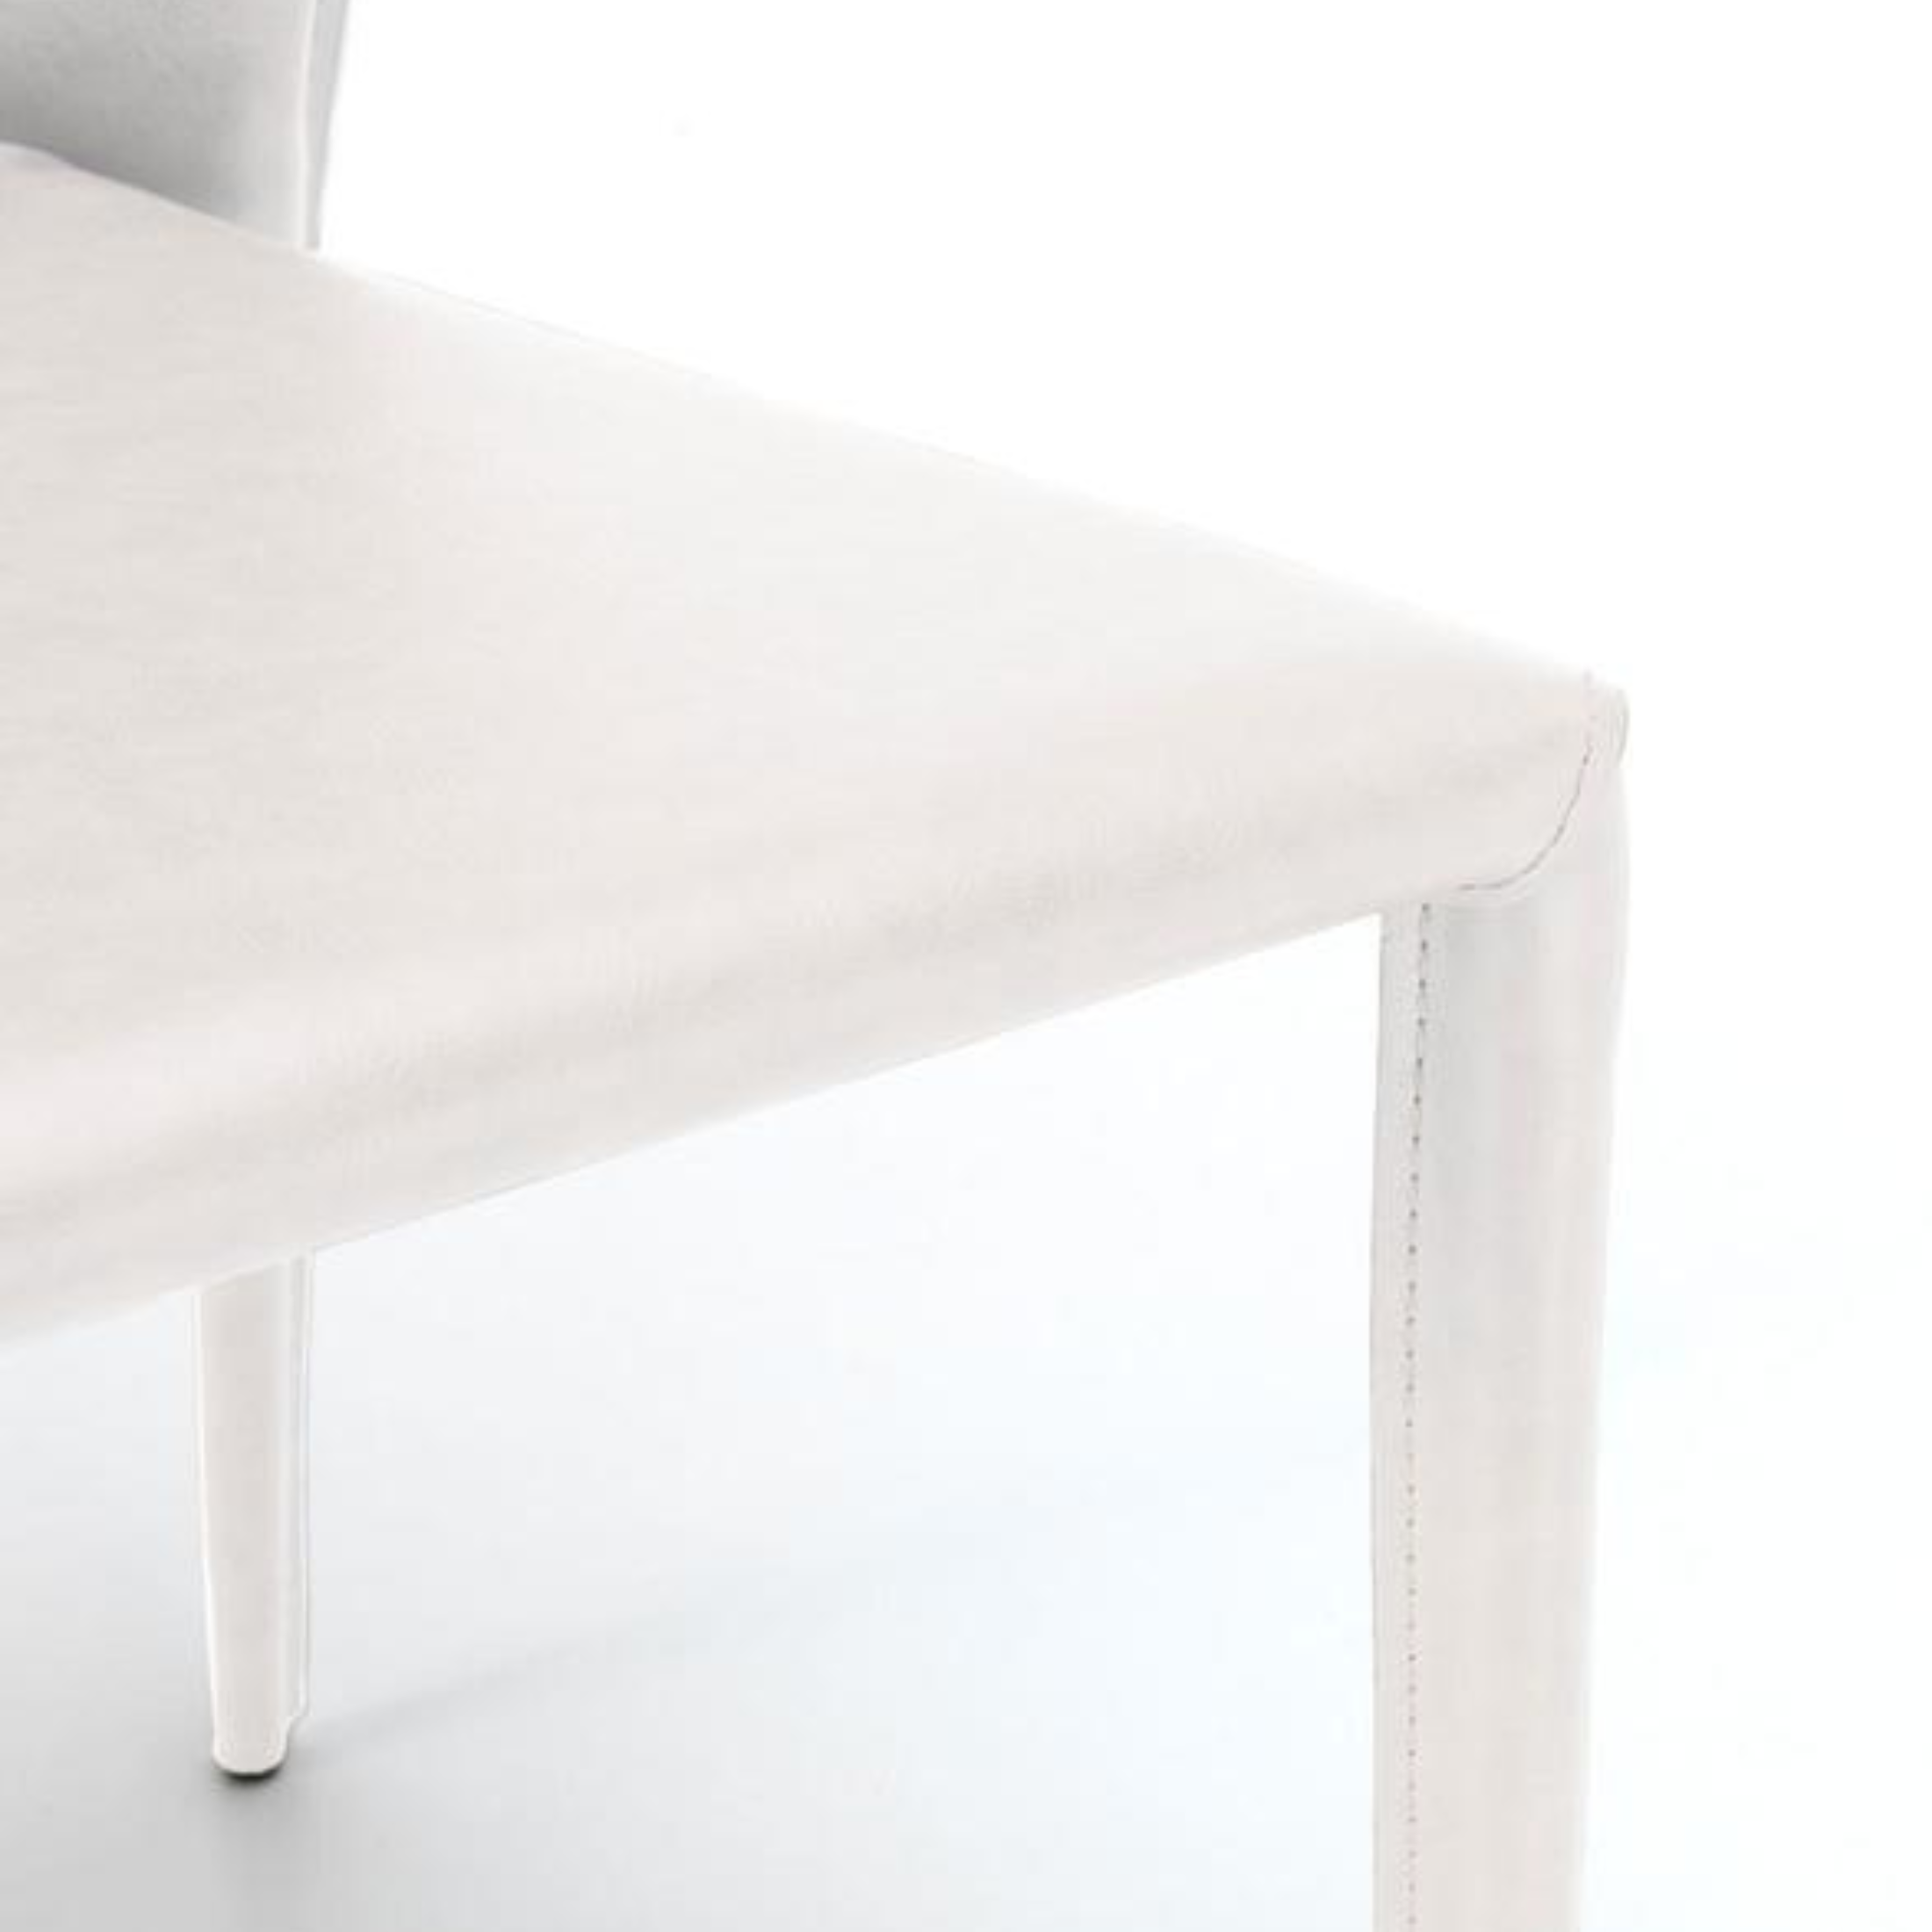 Set di sedie moderne in similcuoio "Glicine" da soggiorno eleganti cm 56x49 82h